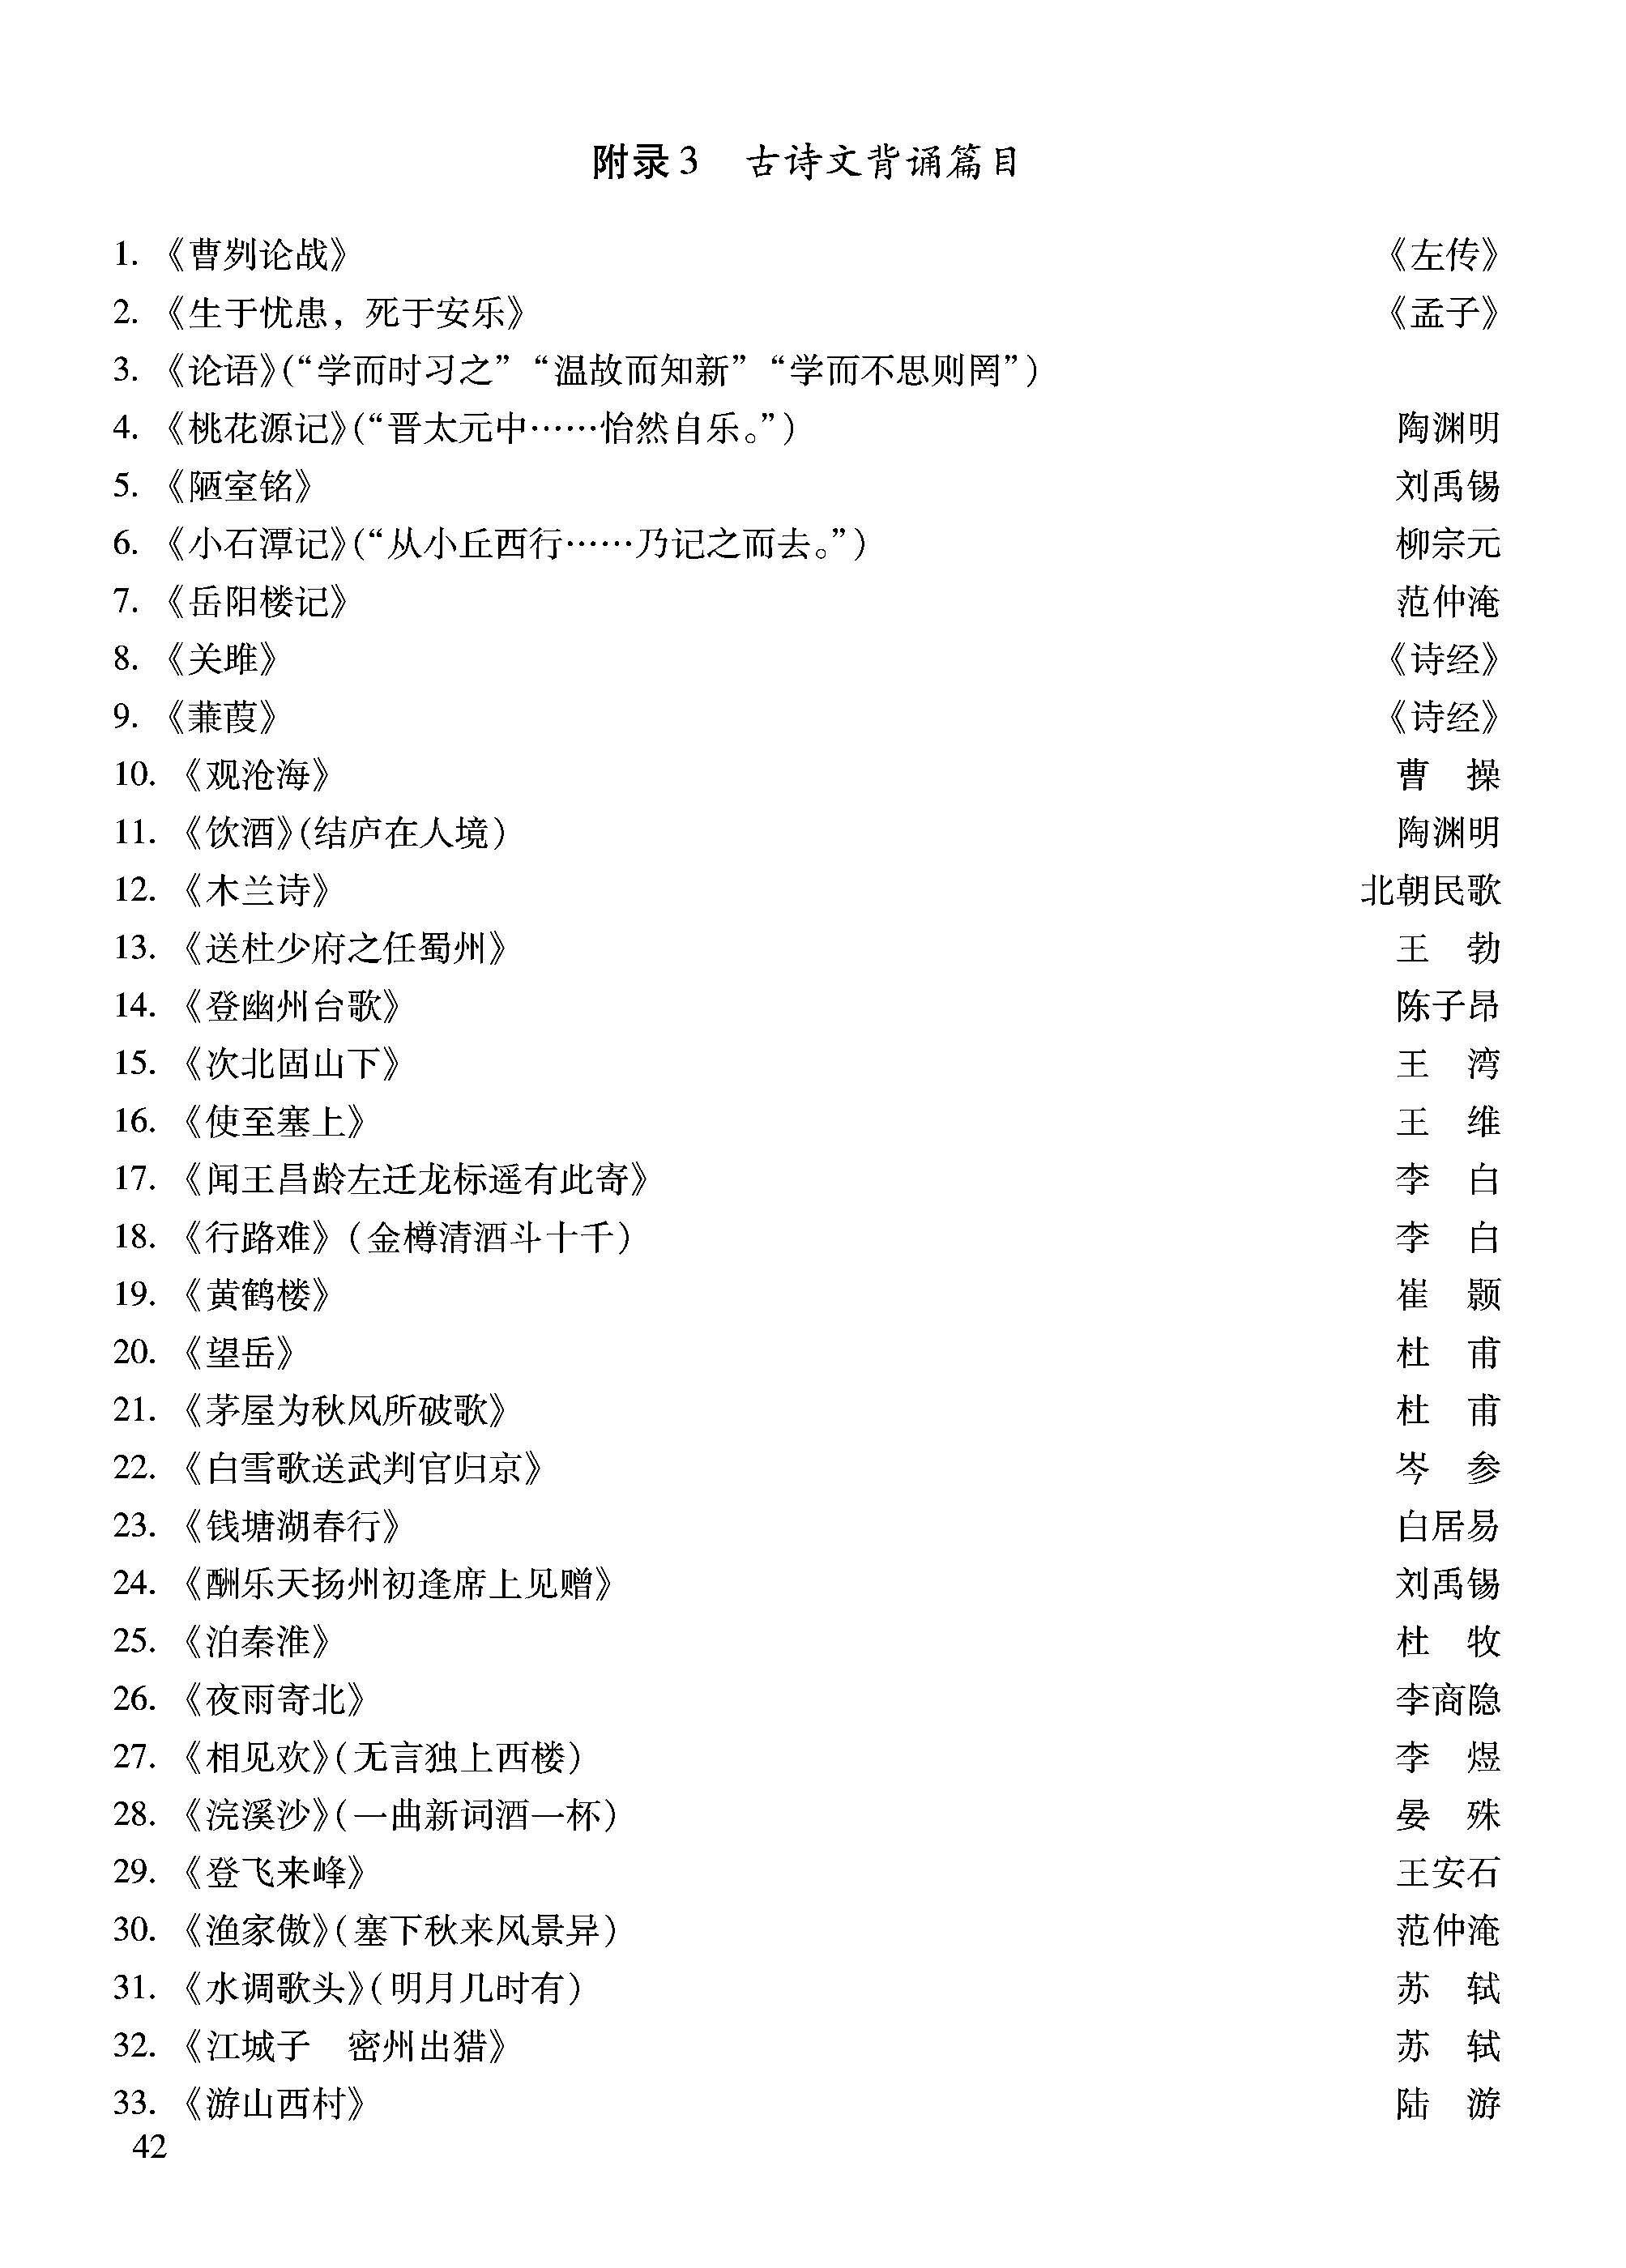 2018北京中考语文考试说明附录:古诗文背诵篇